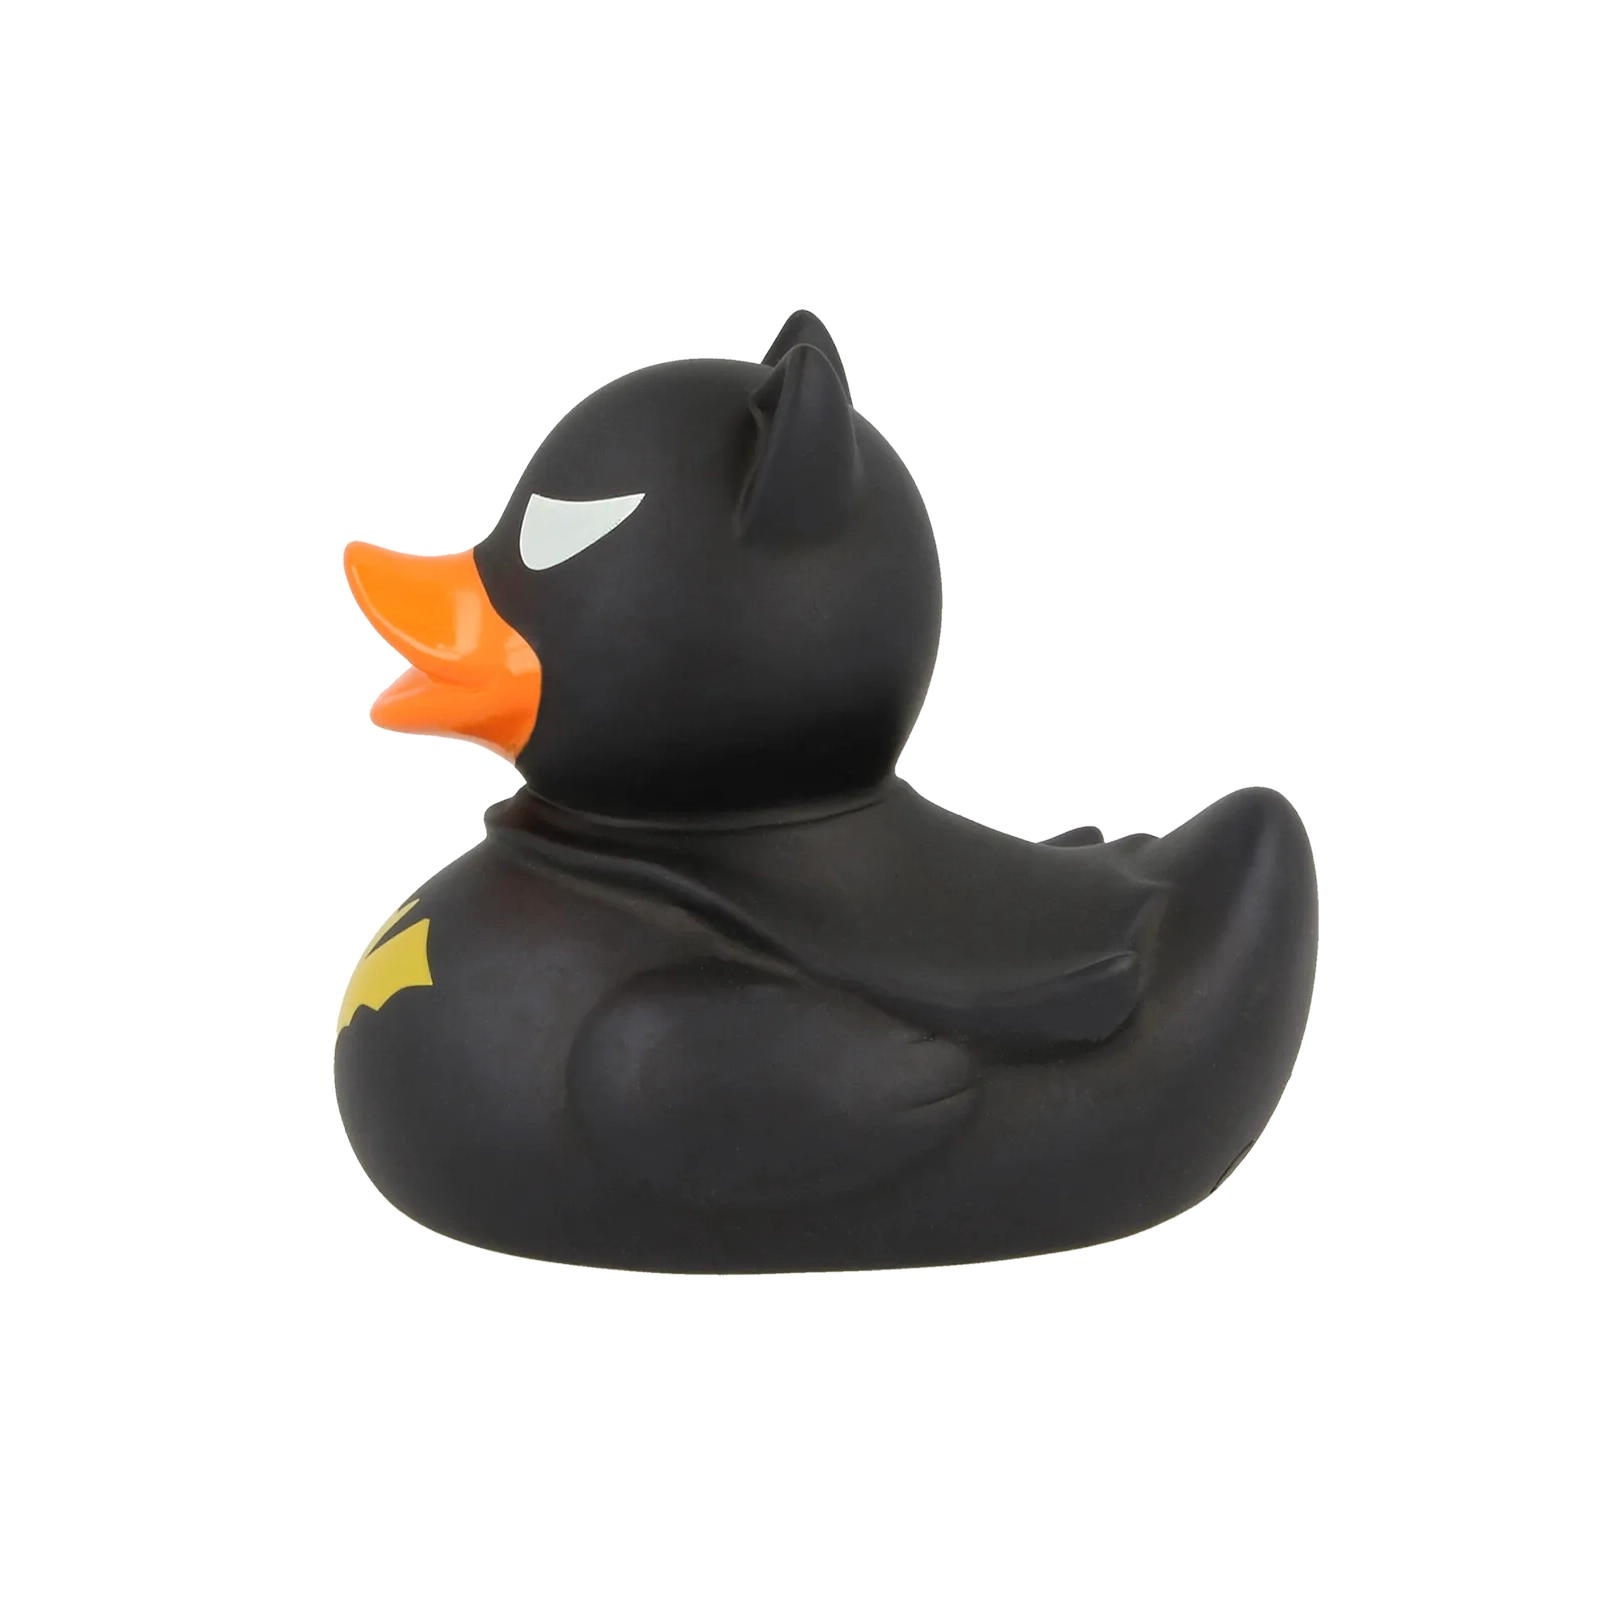 Игрушка для ванной Funny Ducks Утка Летучая Мышь черная (L1889) изображение 3